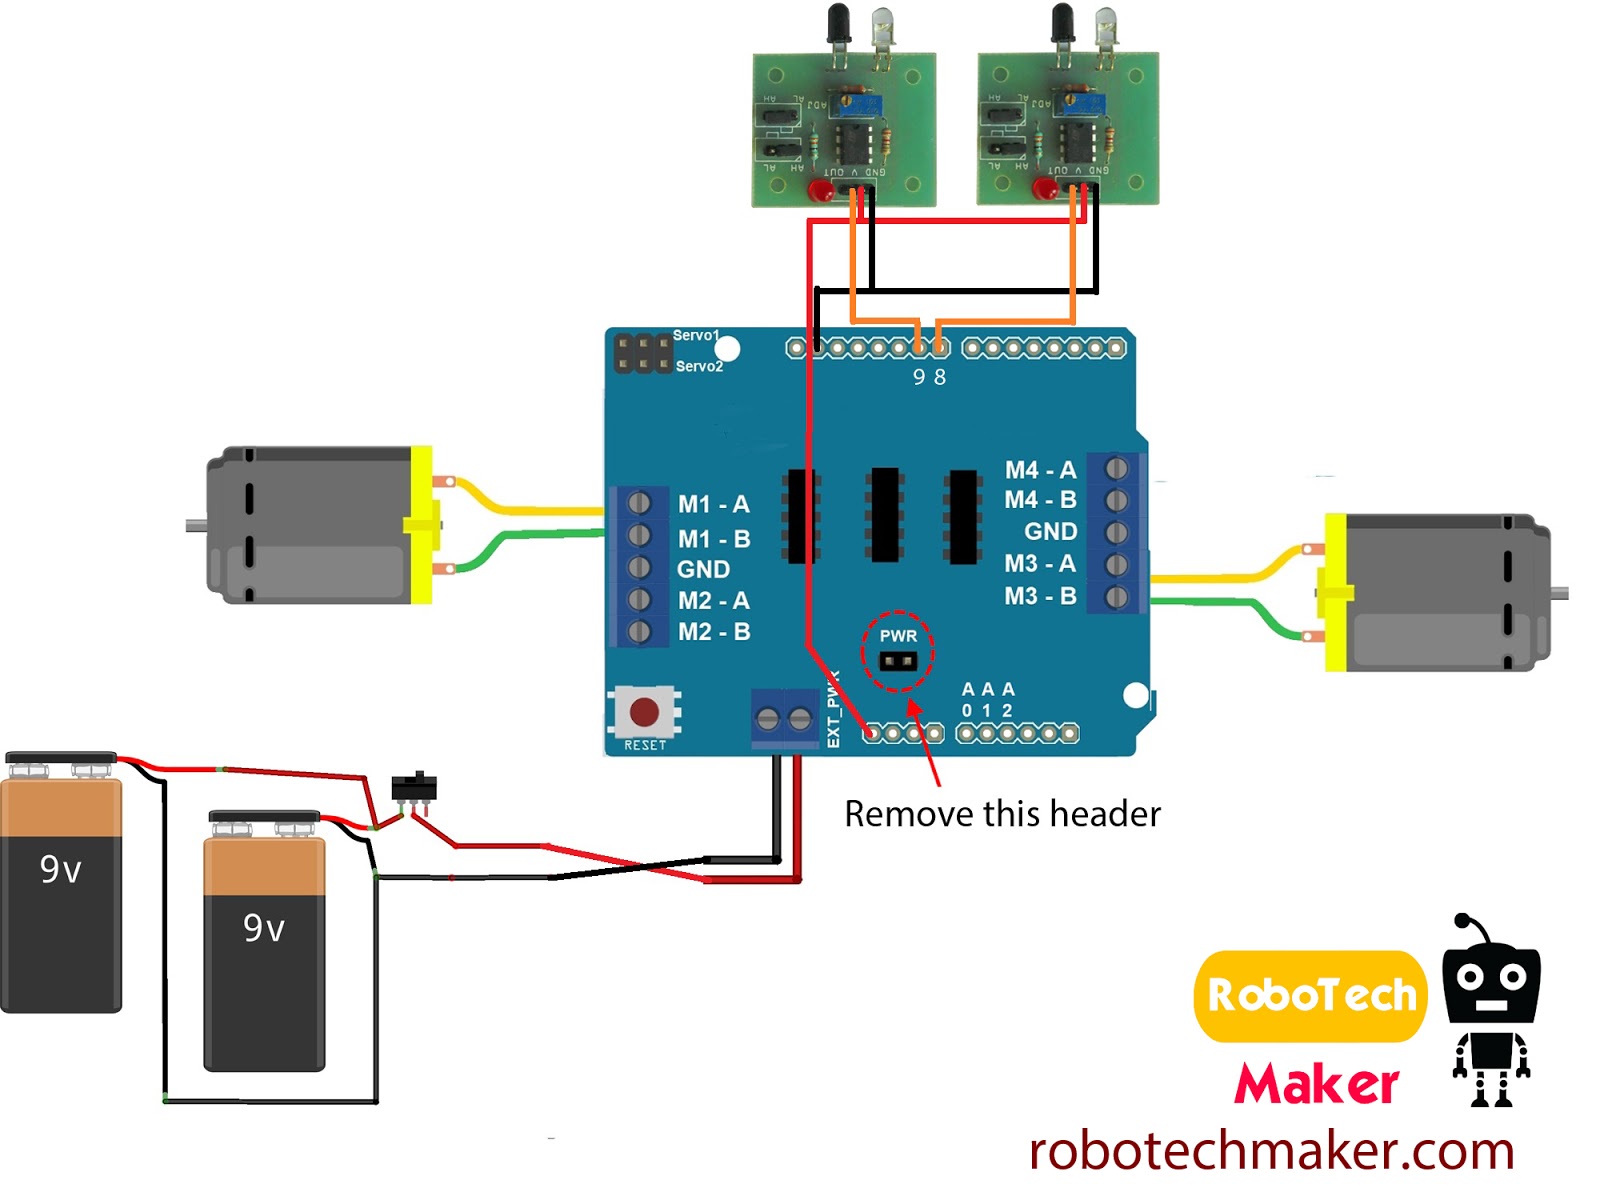 Robotech Maker: Line follower robot - The easiest!